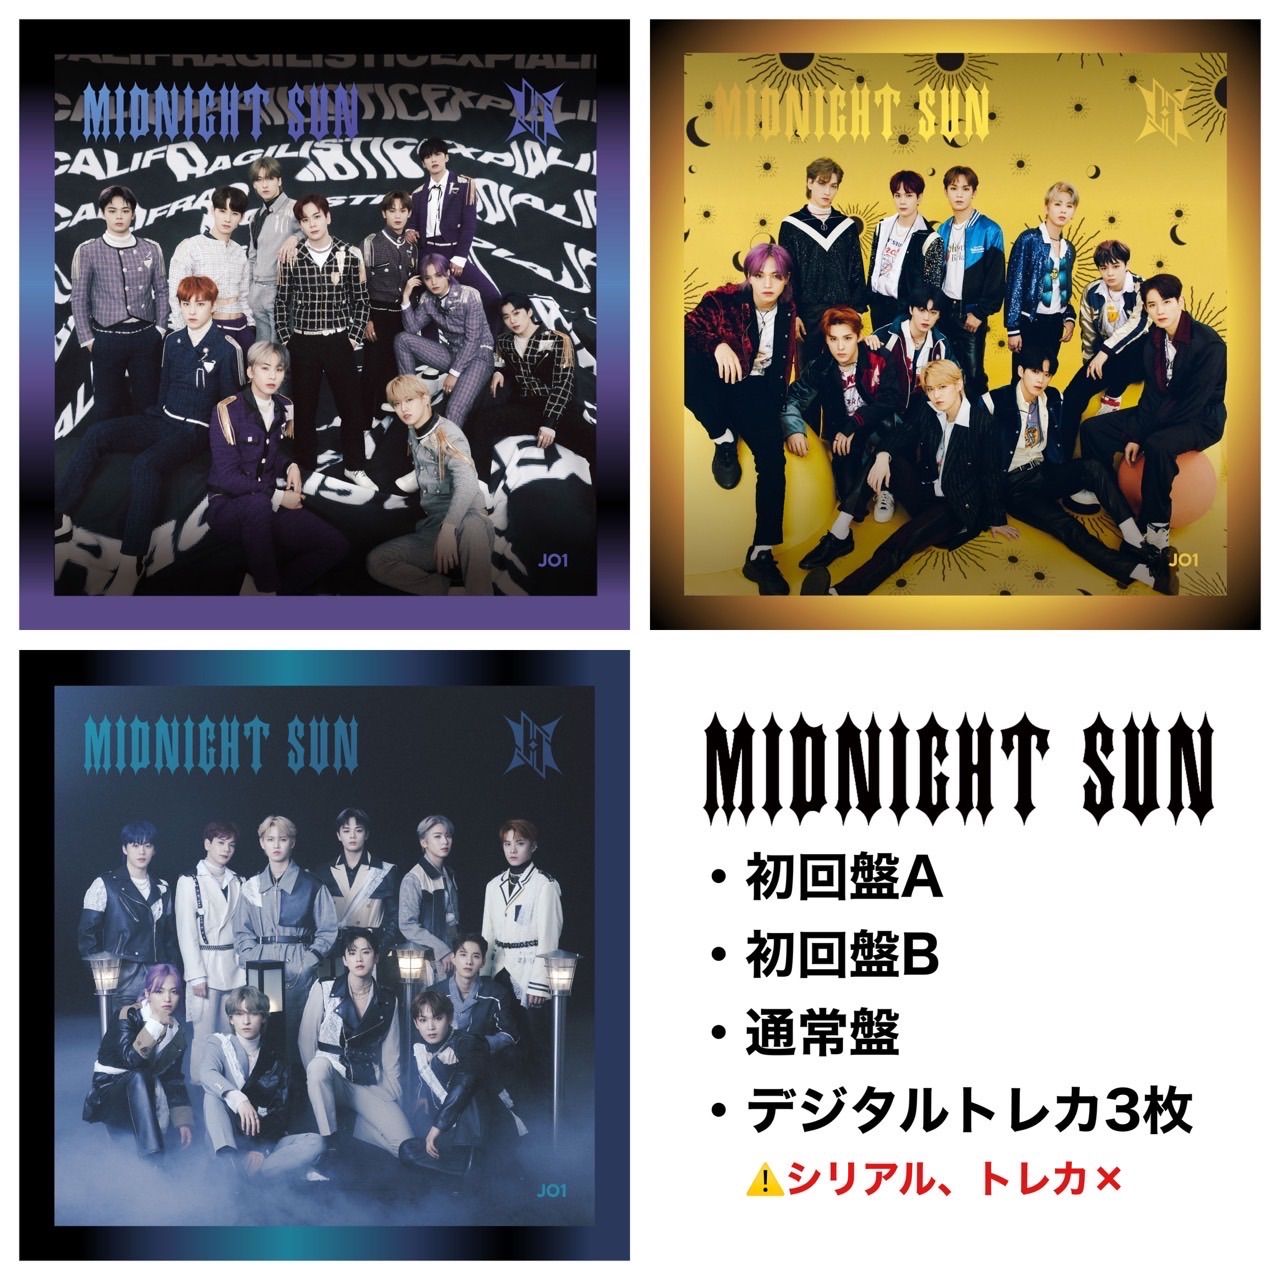 JO1 6thシングル MIDNIGHTSUN CD 3形態セット